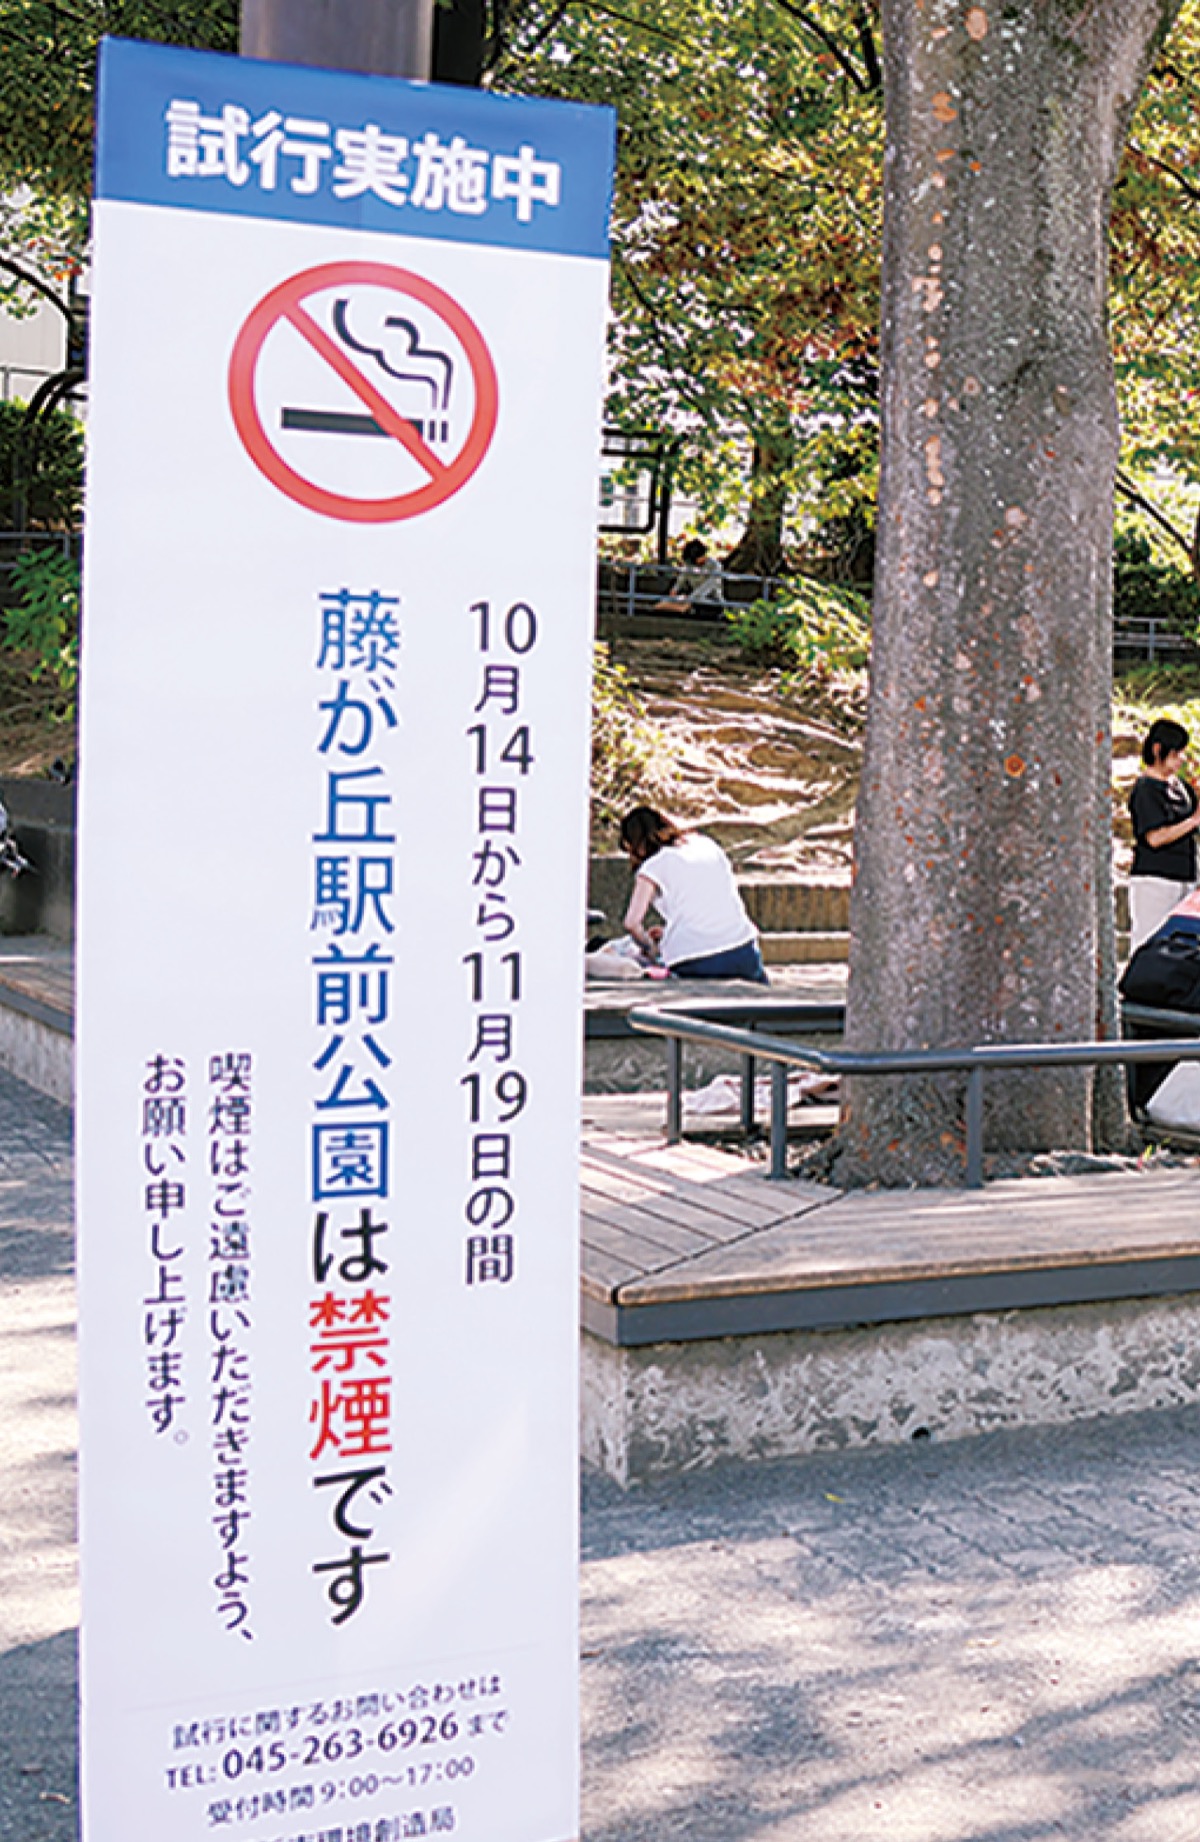 公園内すべて禁煙へ